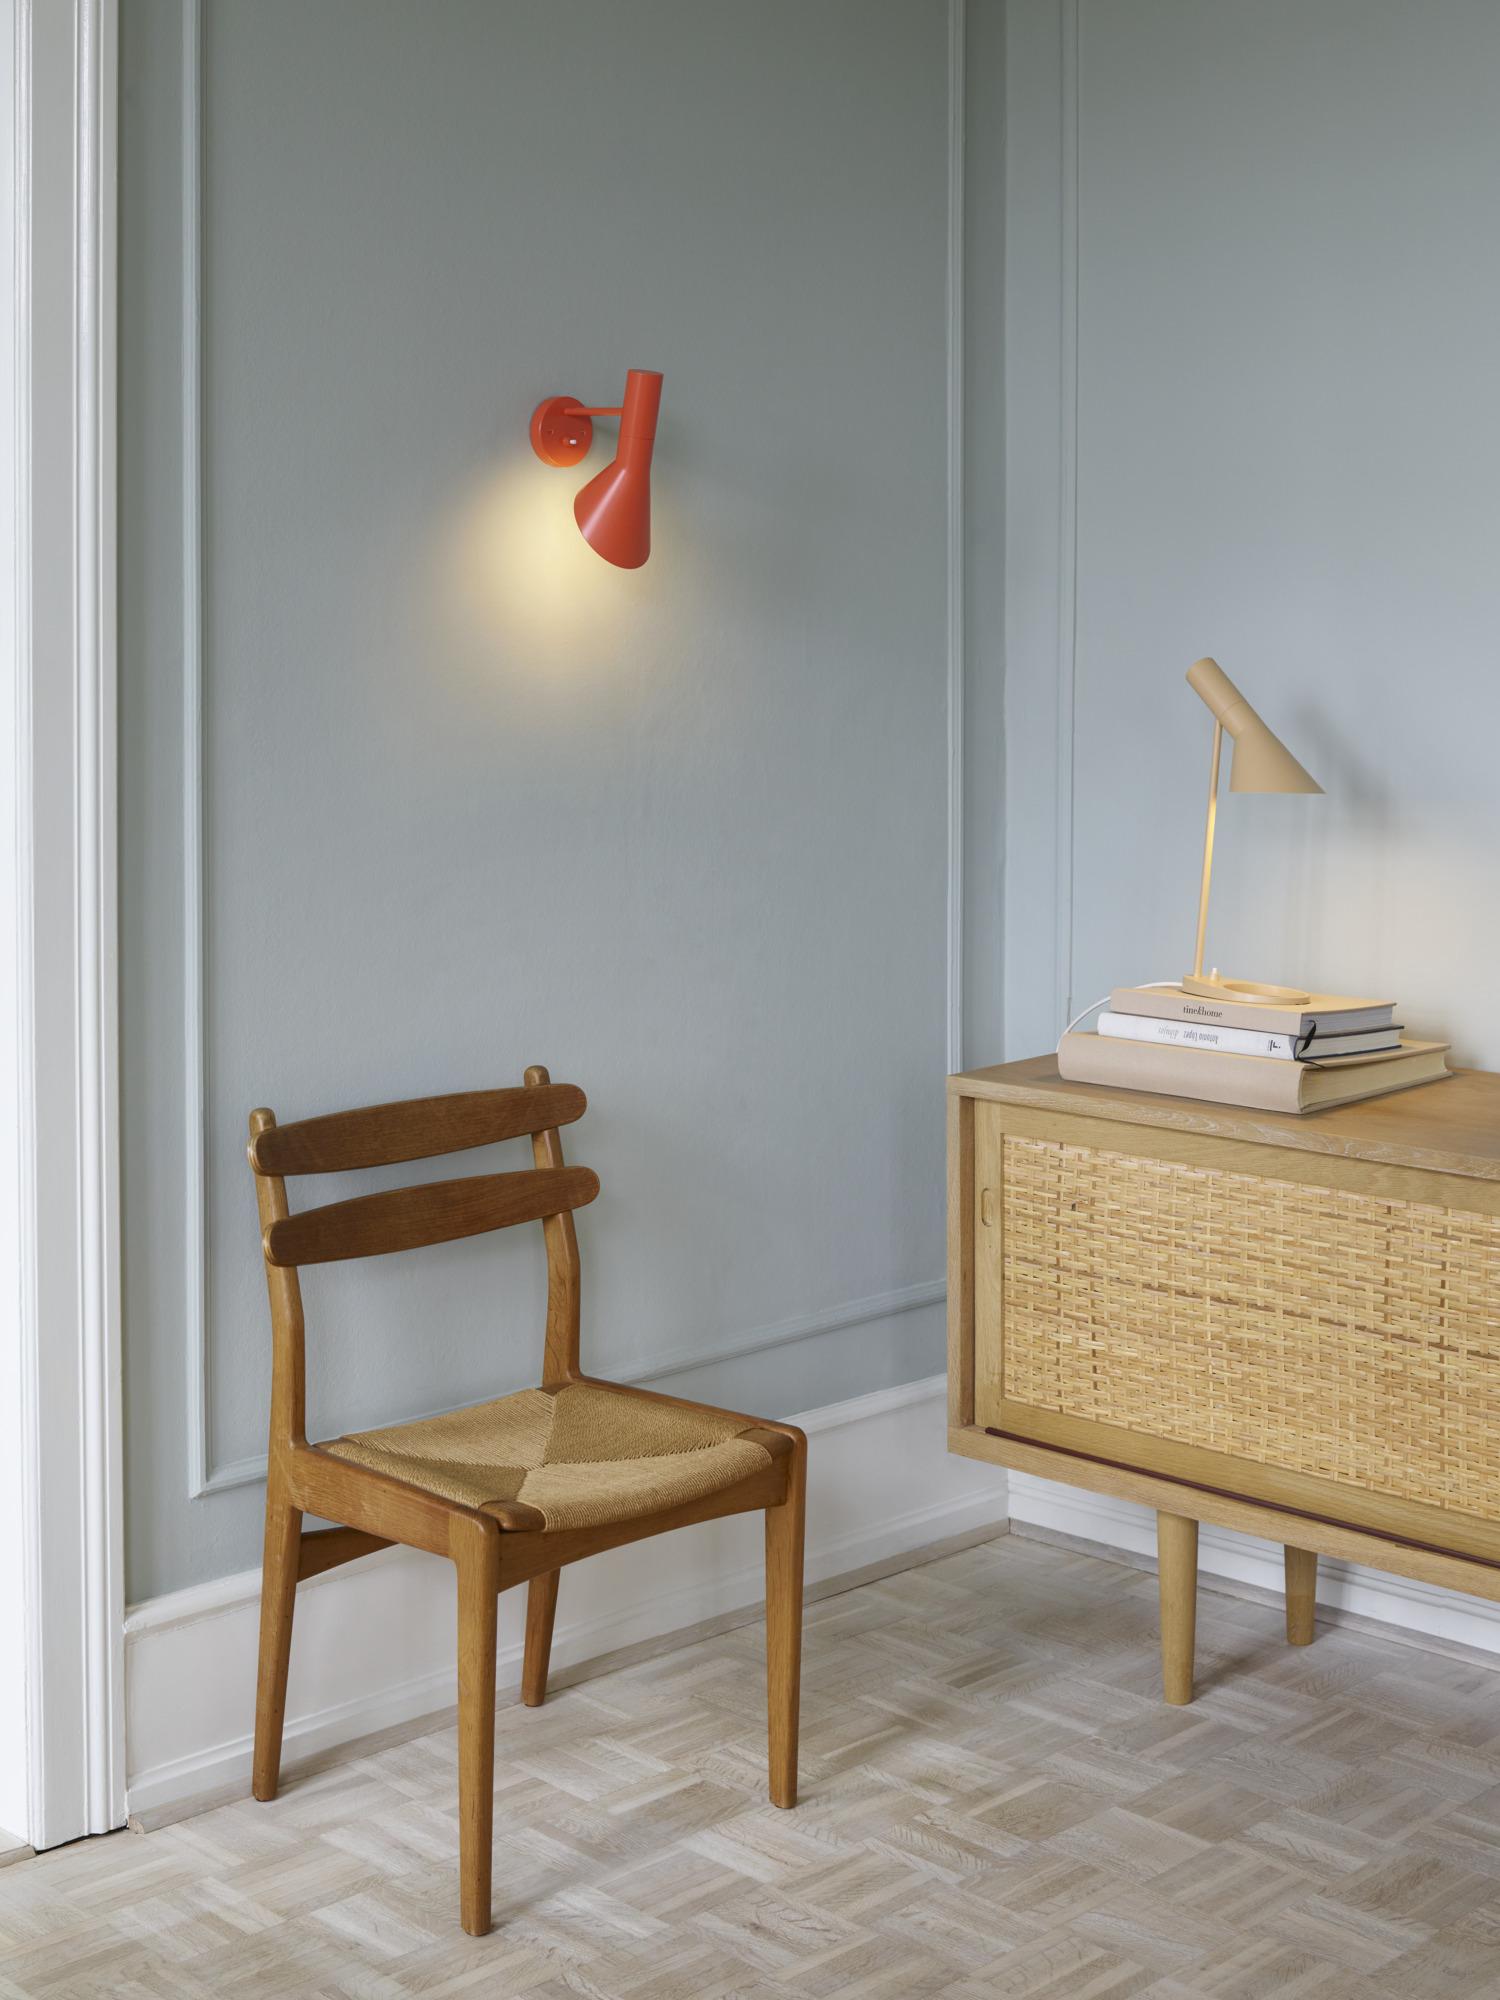 Arne Jacobsen 'AJ Mini' Table Lamp in Black for Louis Poulsen For Sale 1